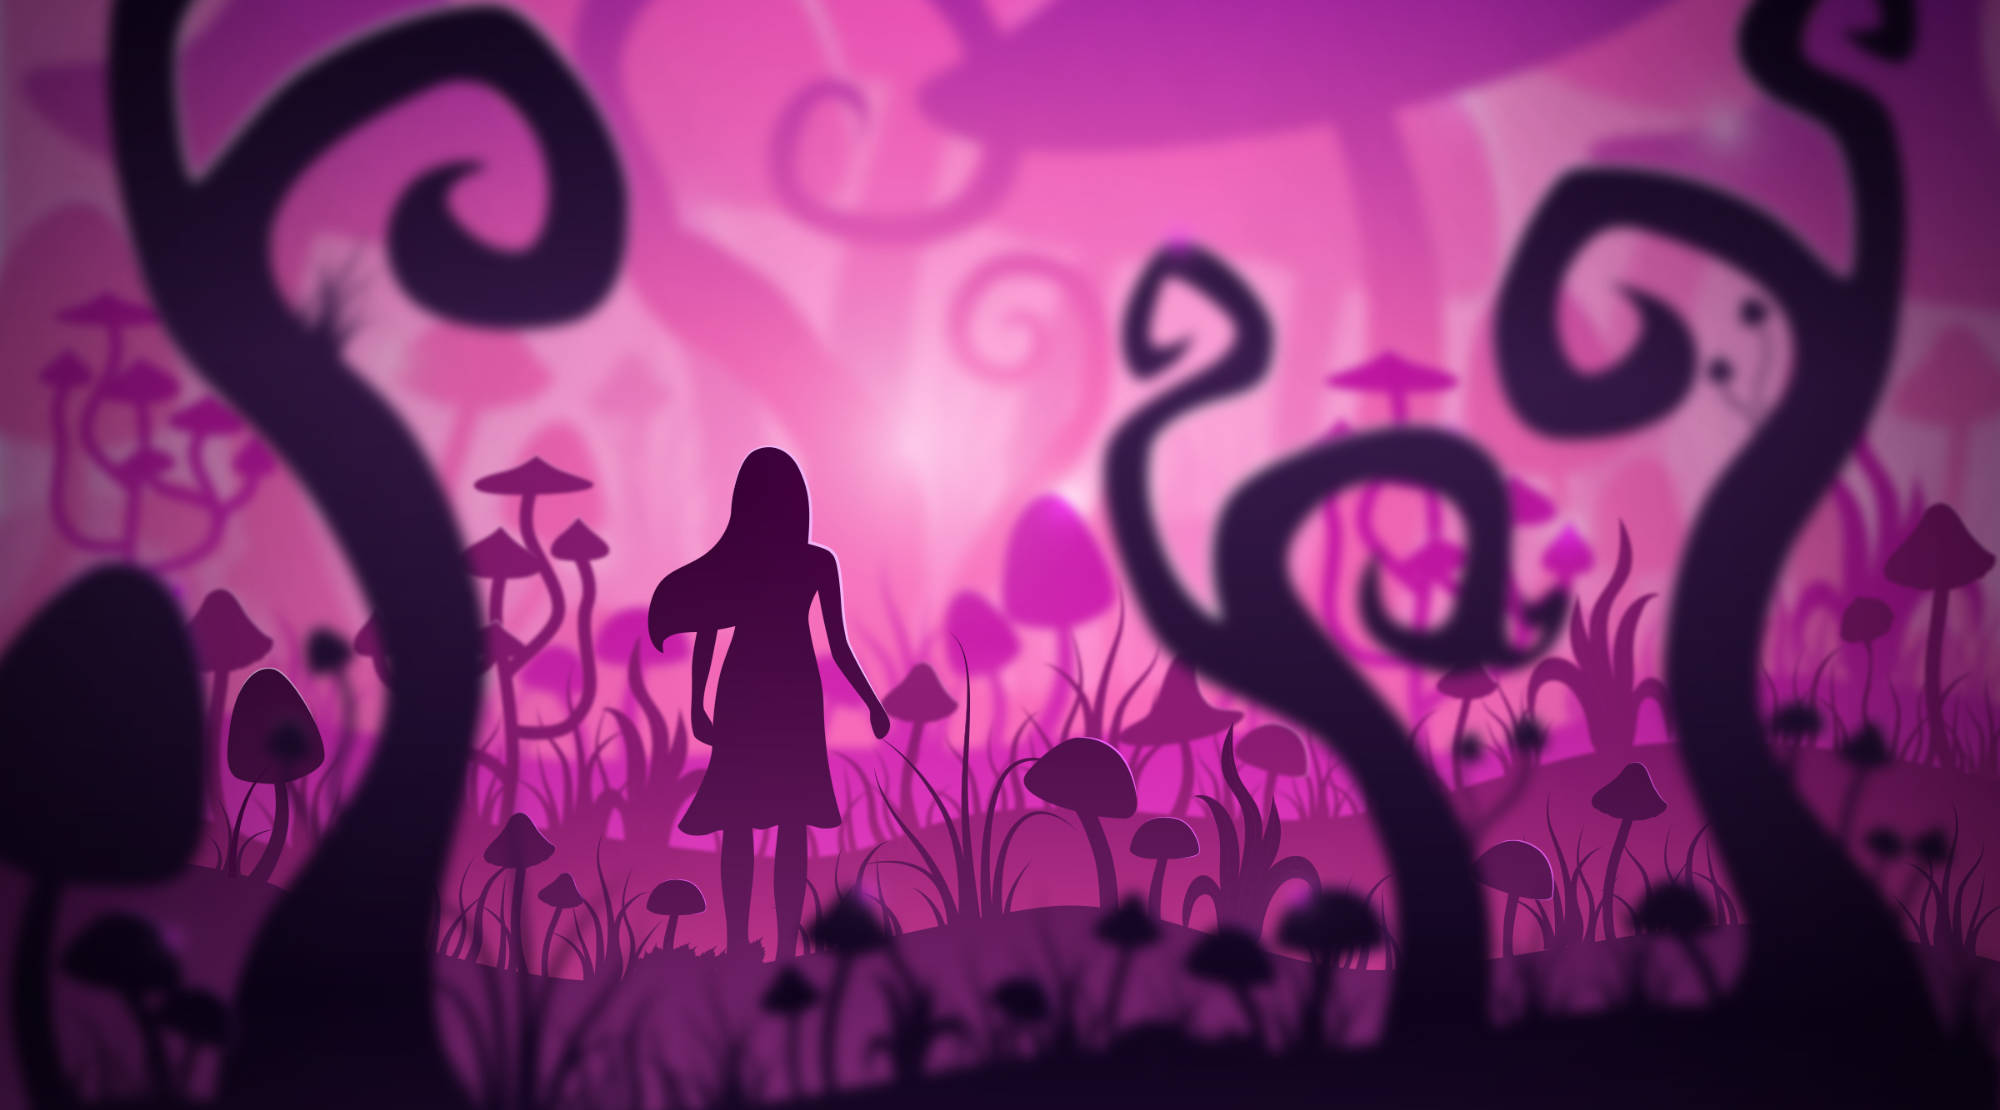 Grafik mit junger Frau in einem düsteren Wald von Pilzen